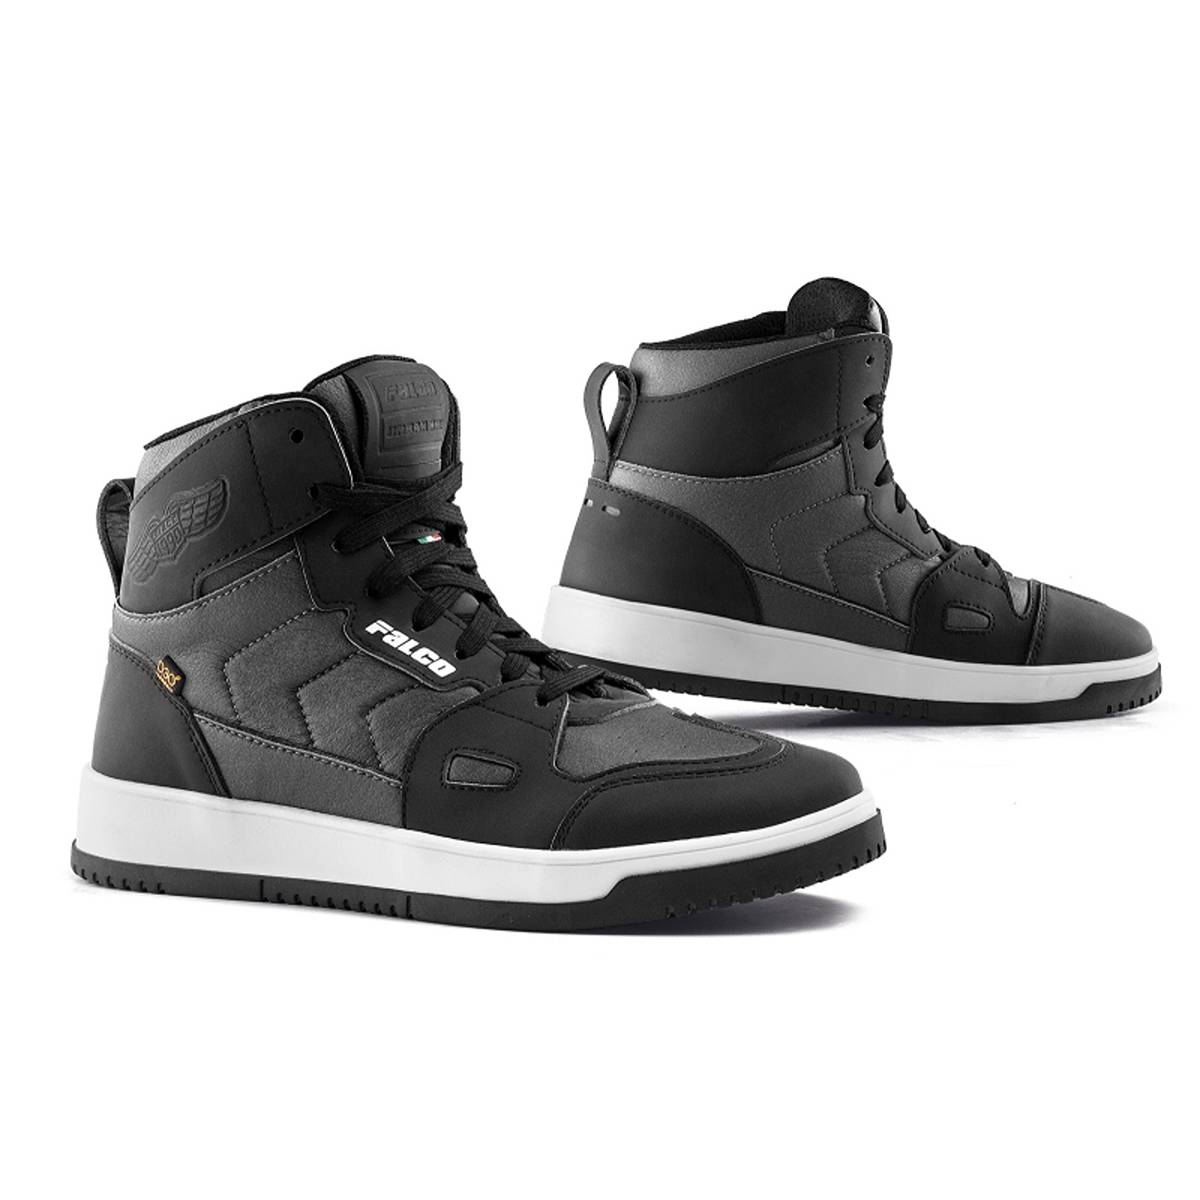 Falco Harlem Shoes Black Grey Size 39